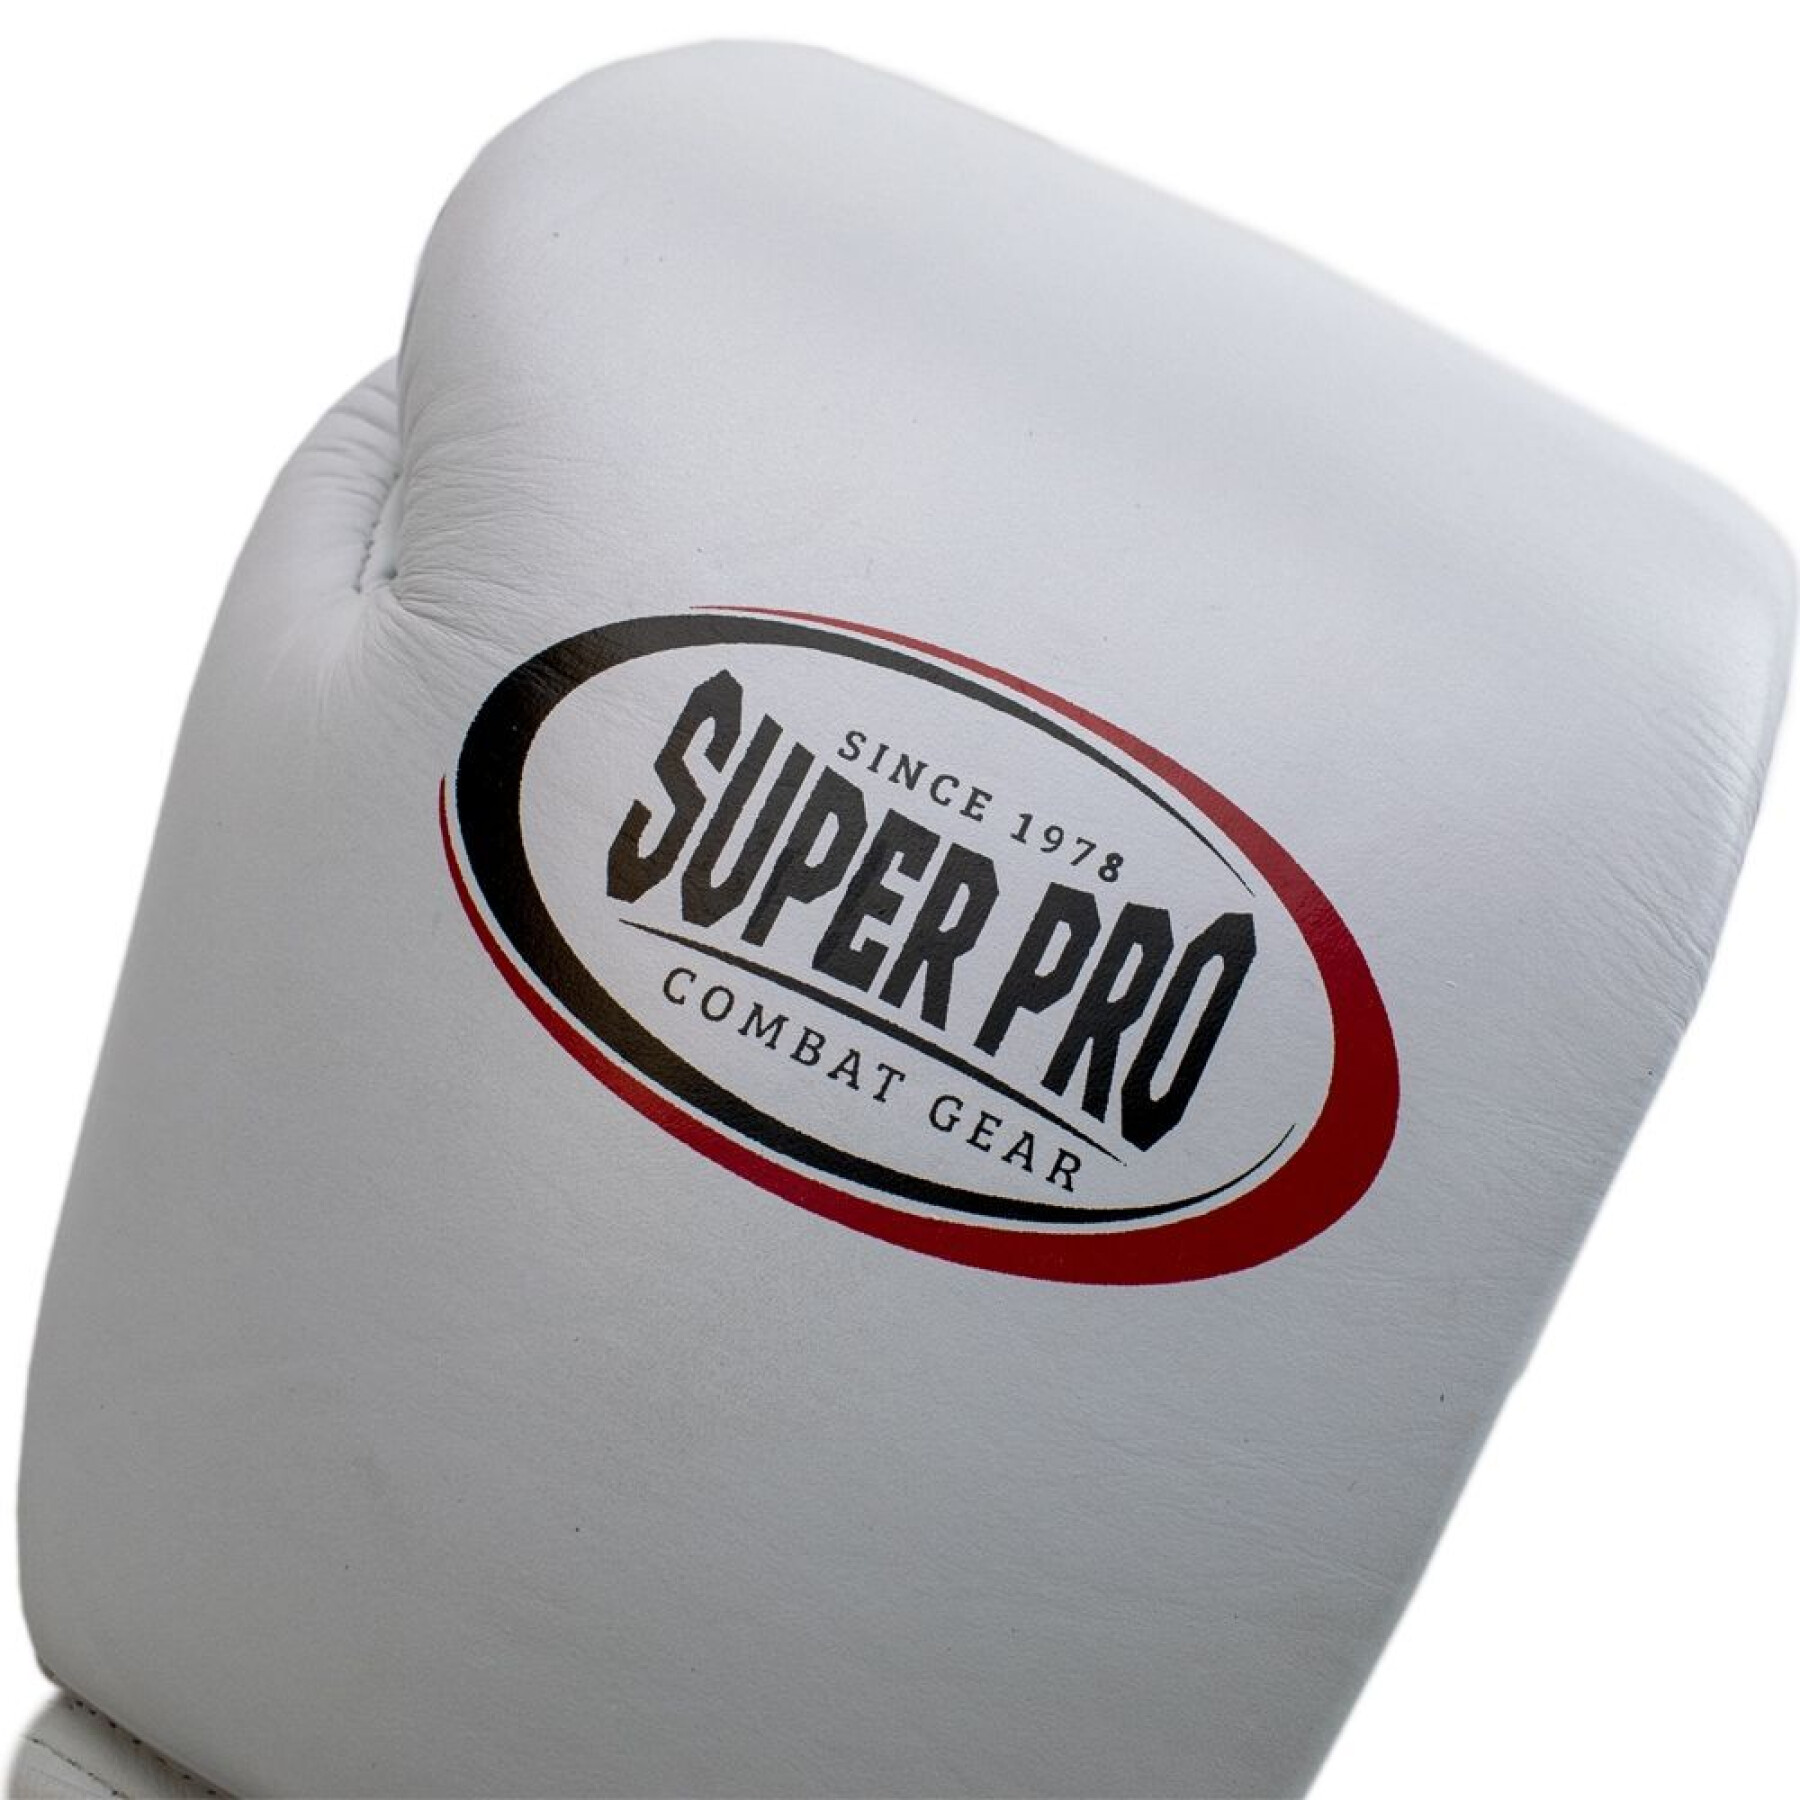 Gants de boxe Thaï cuir Super Pro Thai-pro